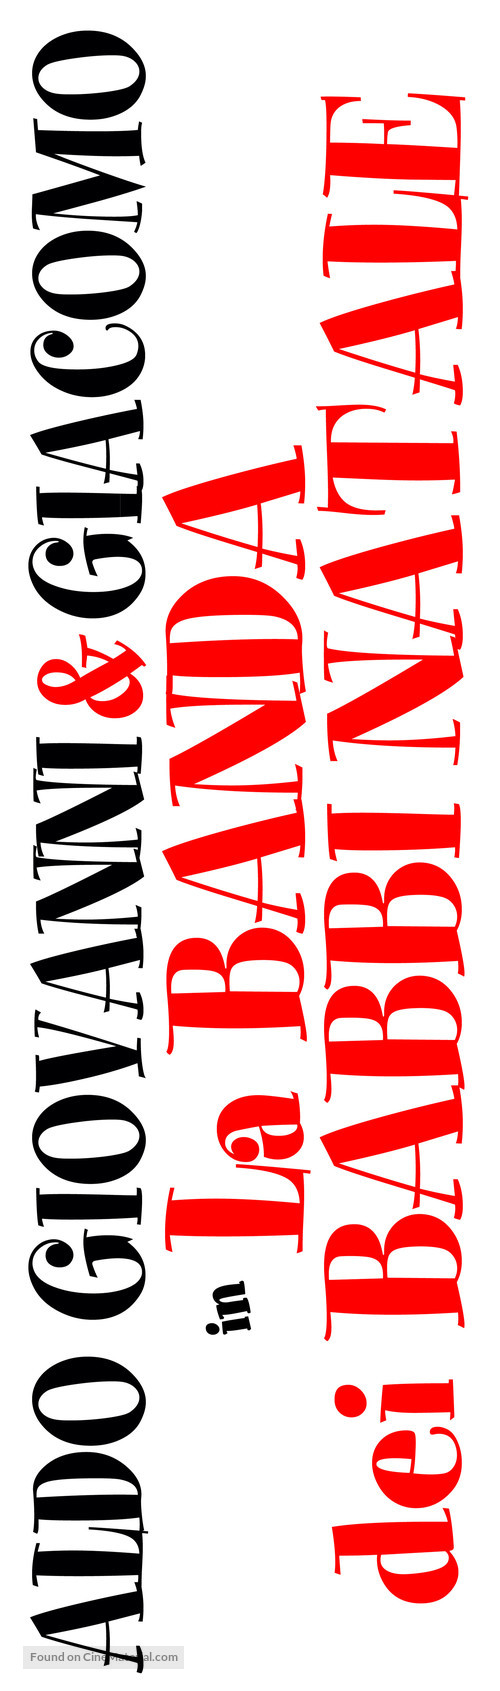 La banda dei babbi natale - Italian Logo